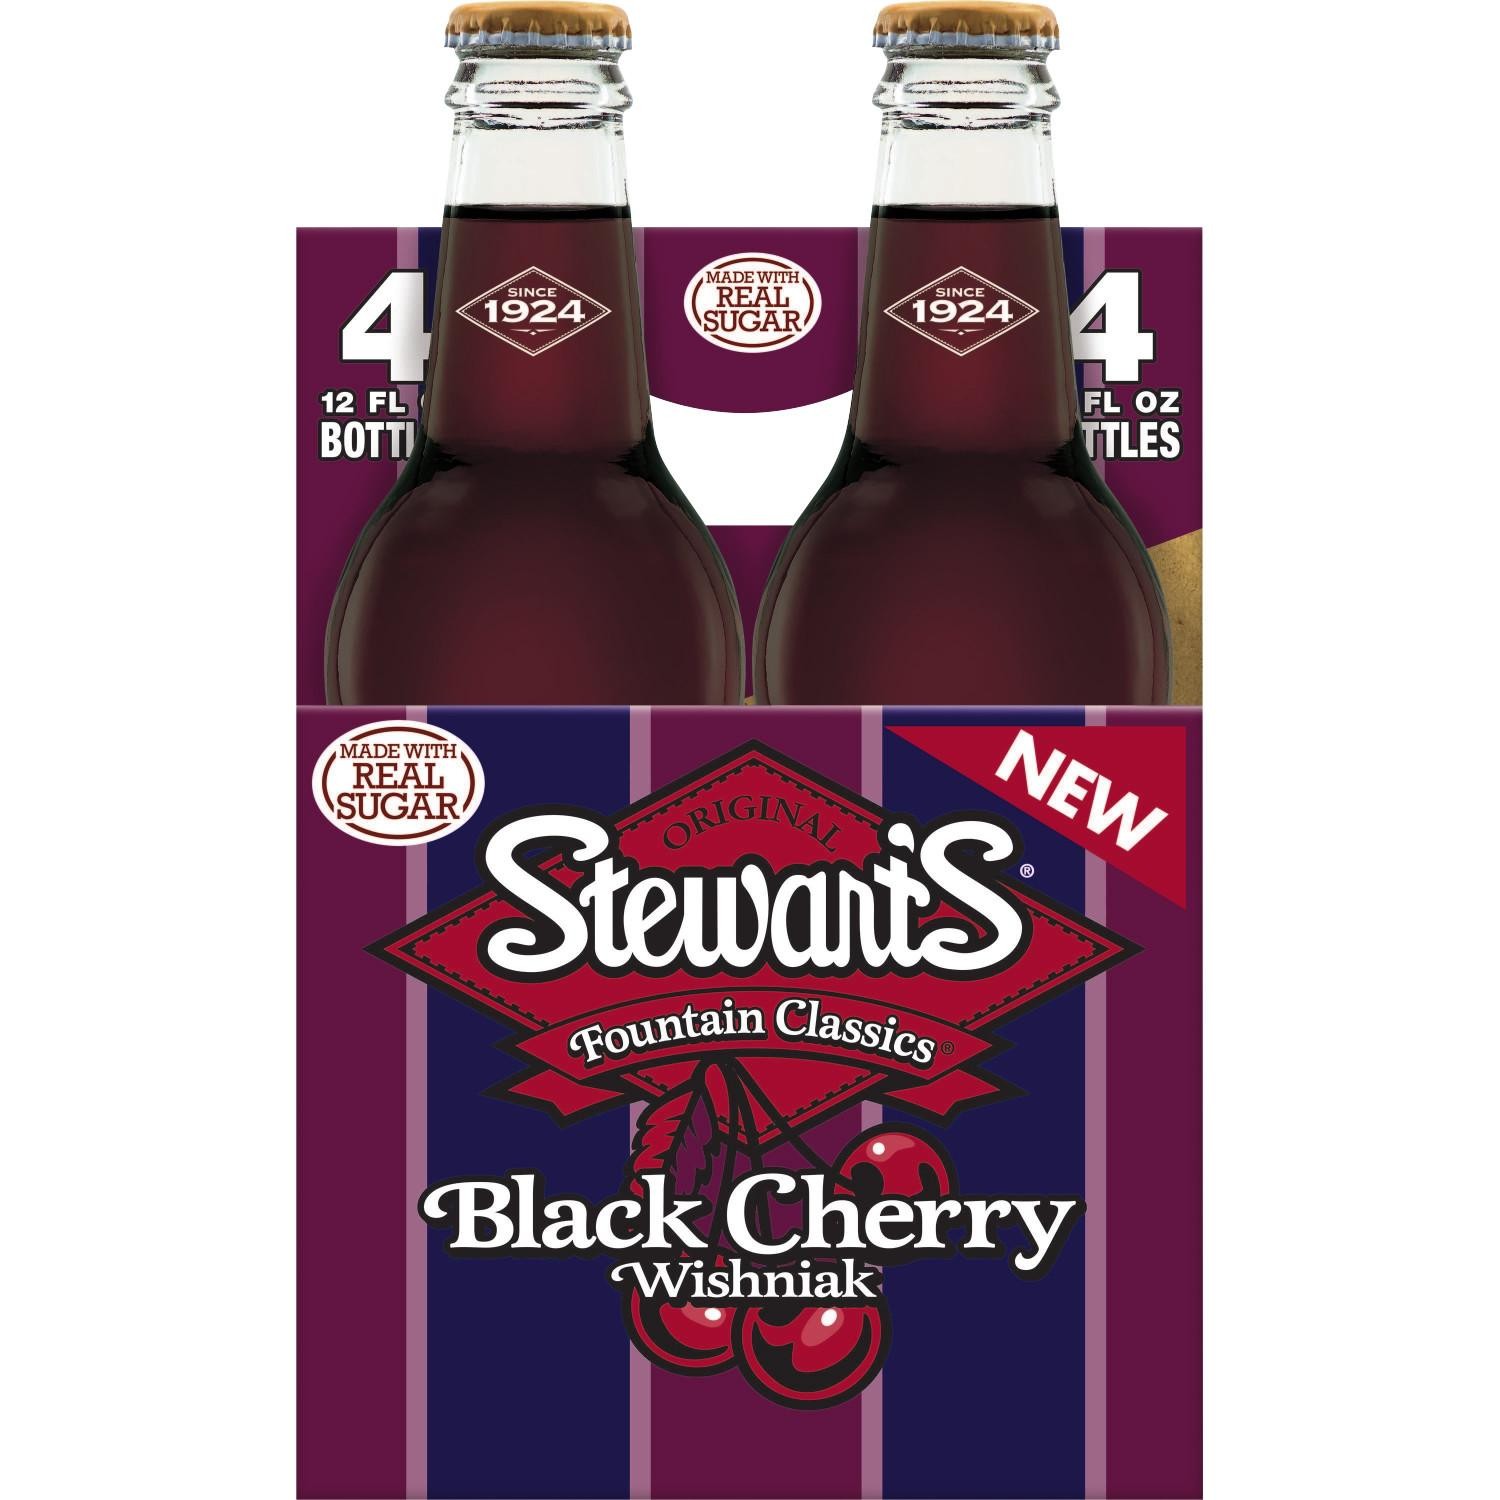 Stewart's Black Cherry